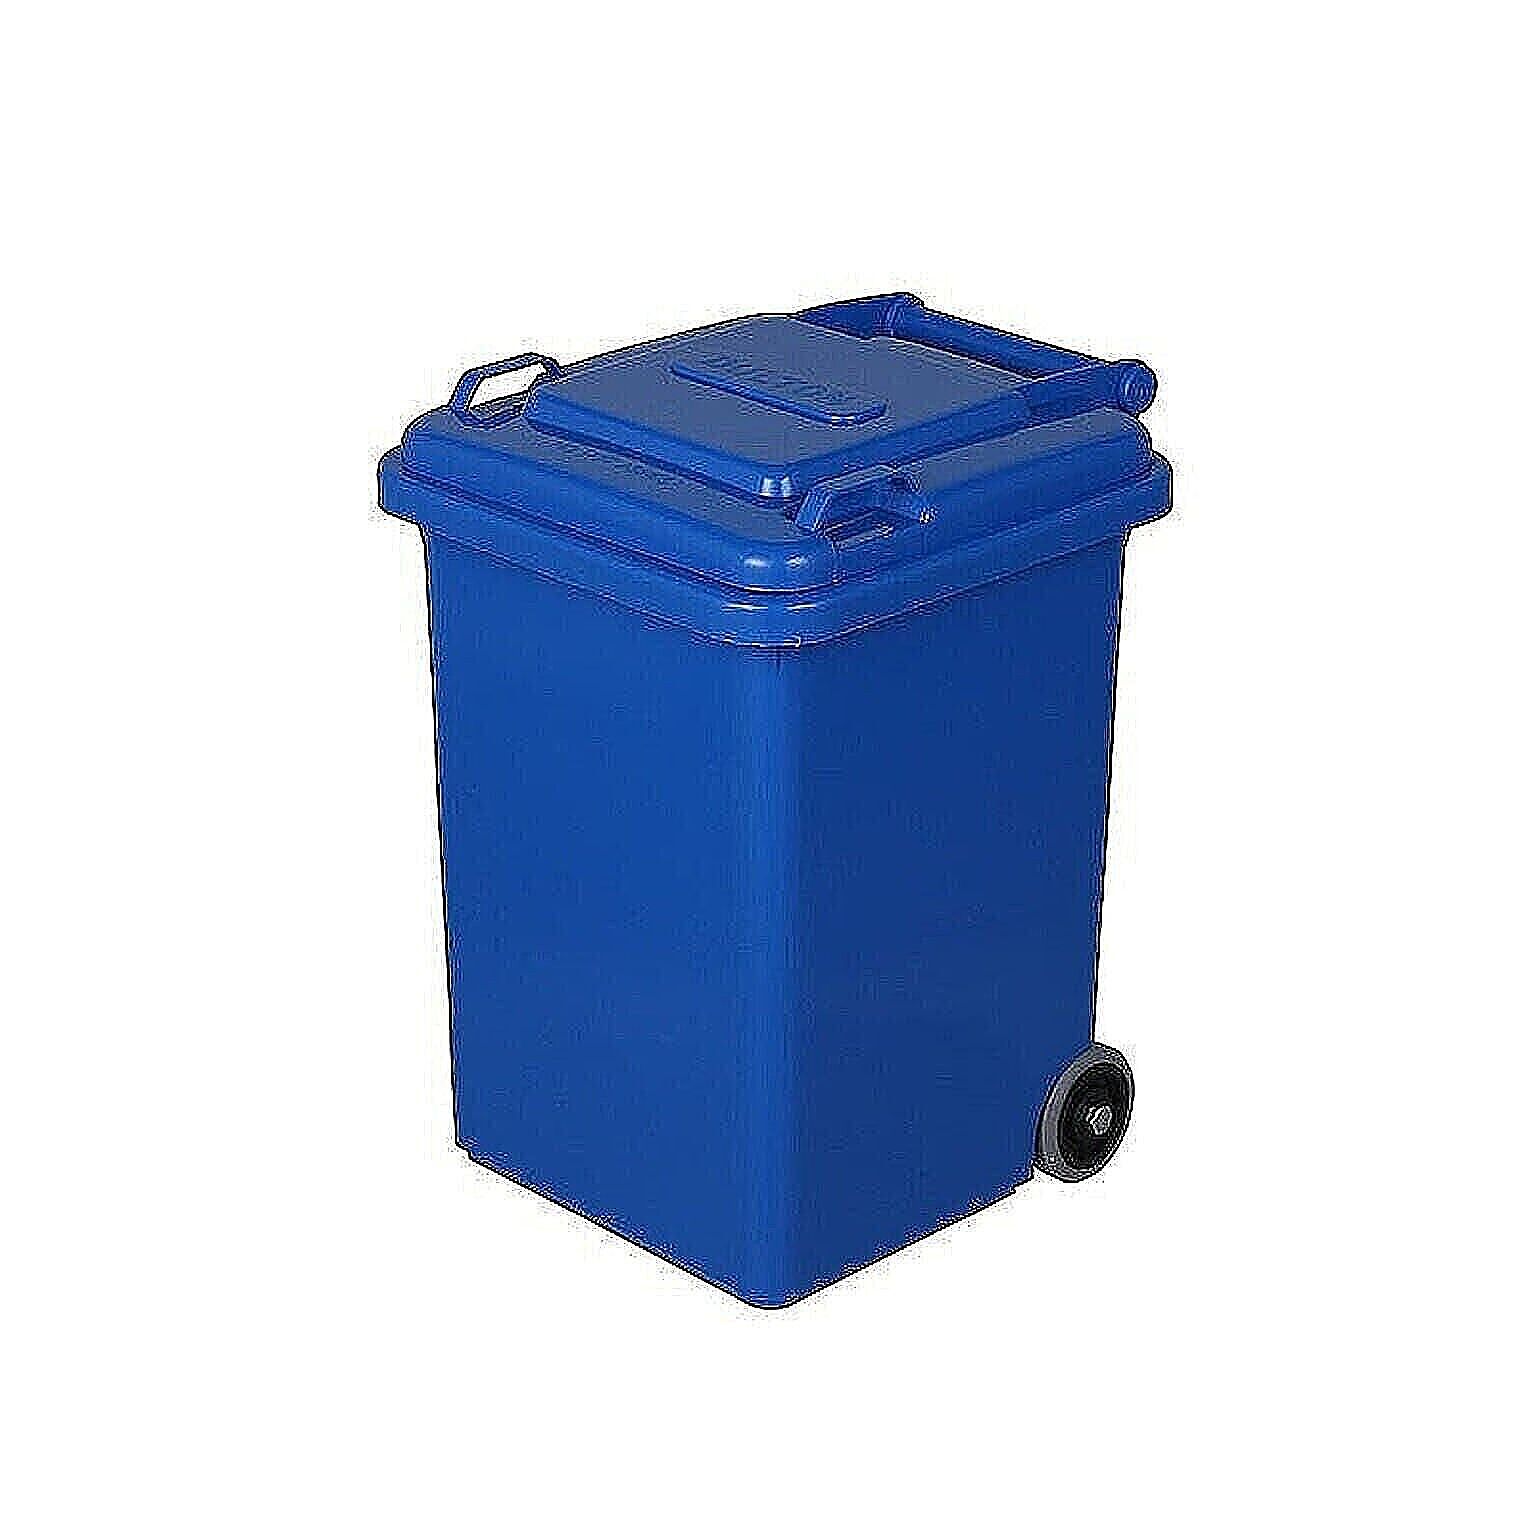 ゴミ箱 組立式 PLASTIC TRASH CAN 18L 幅290x奥行320x高さ400mm ダルトン